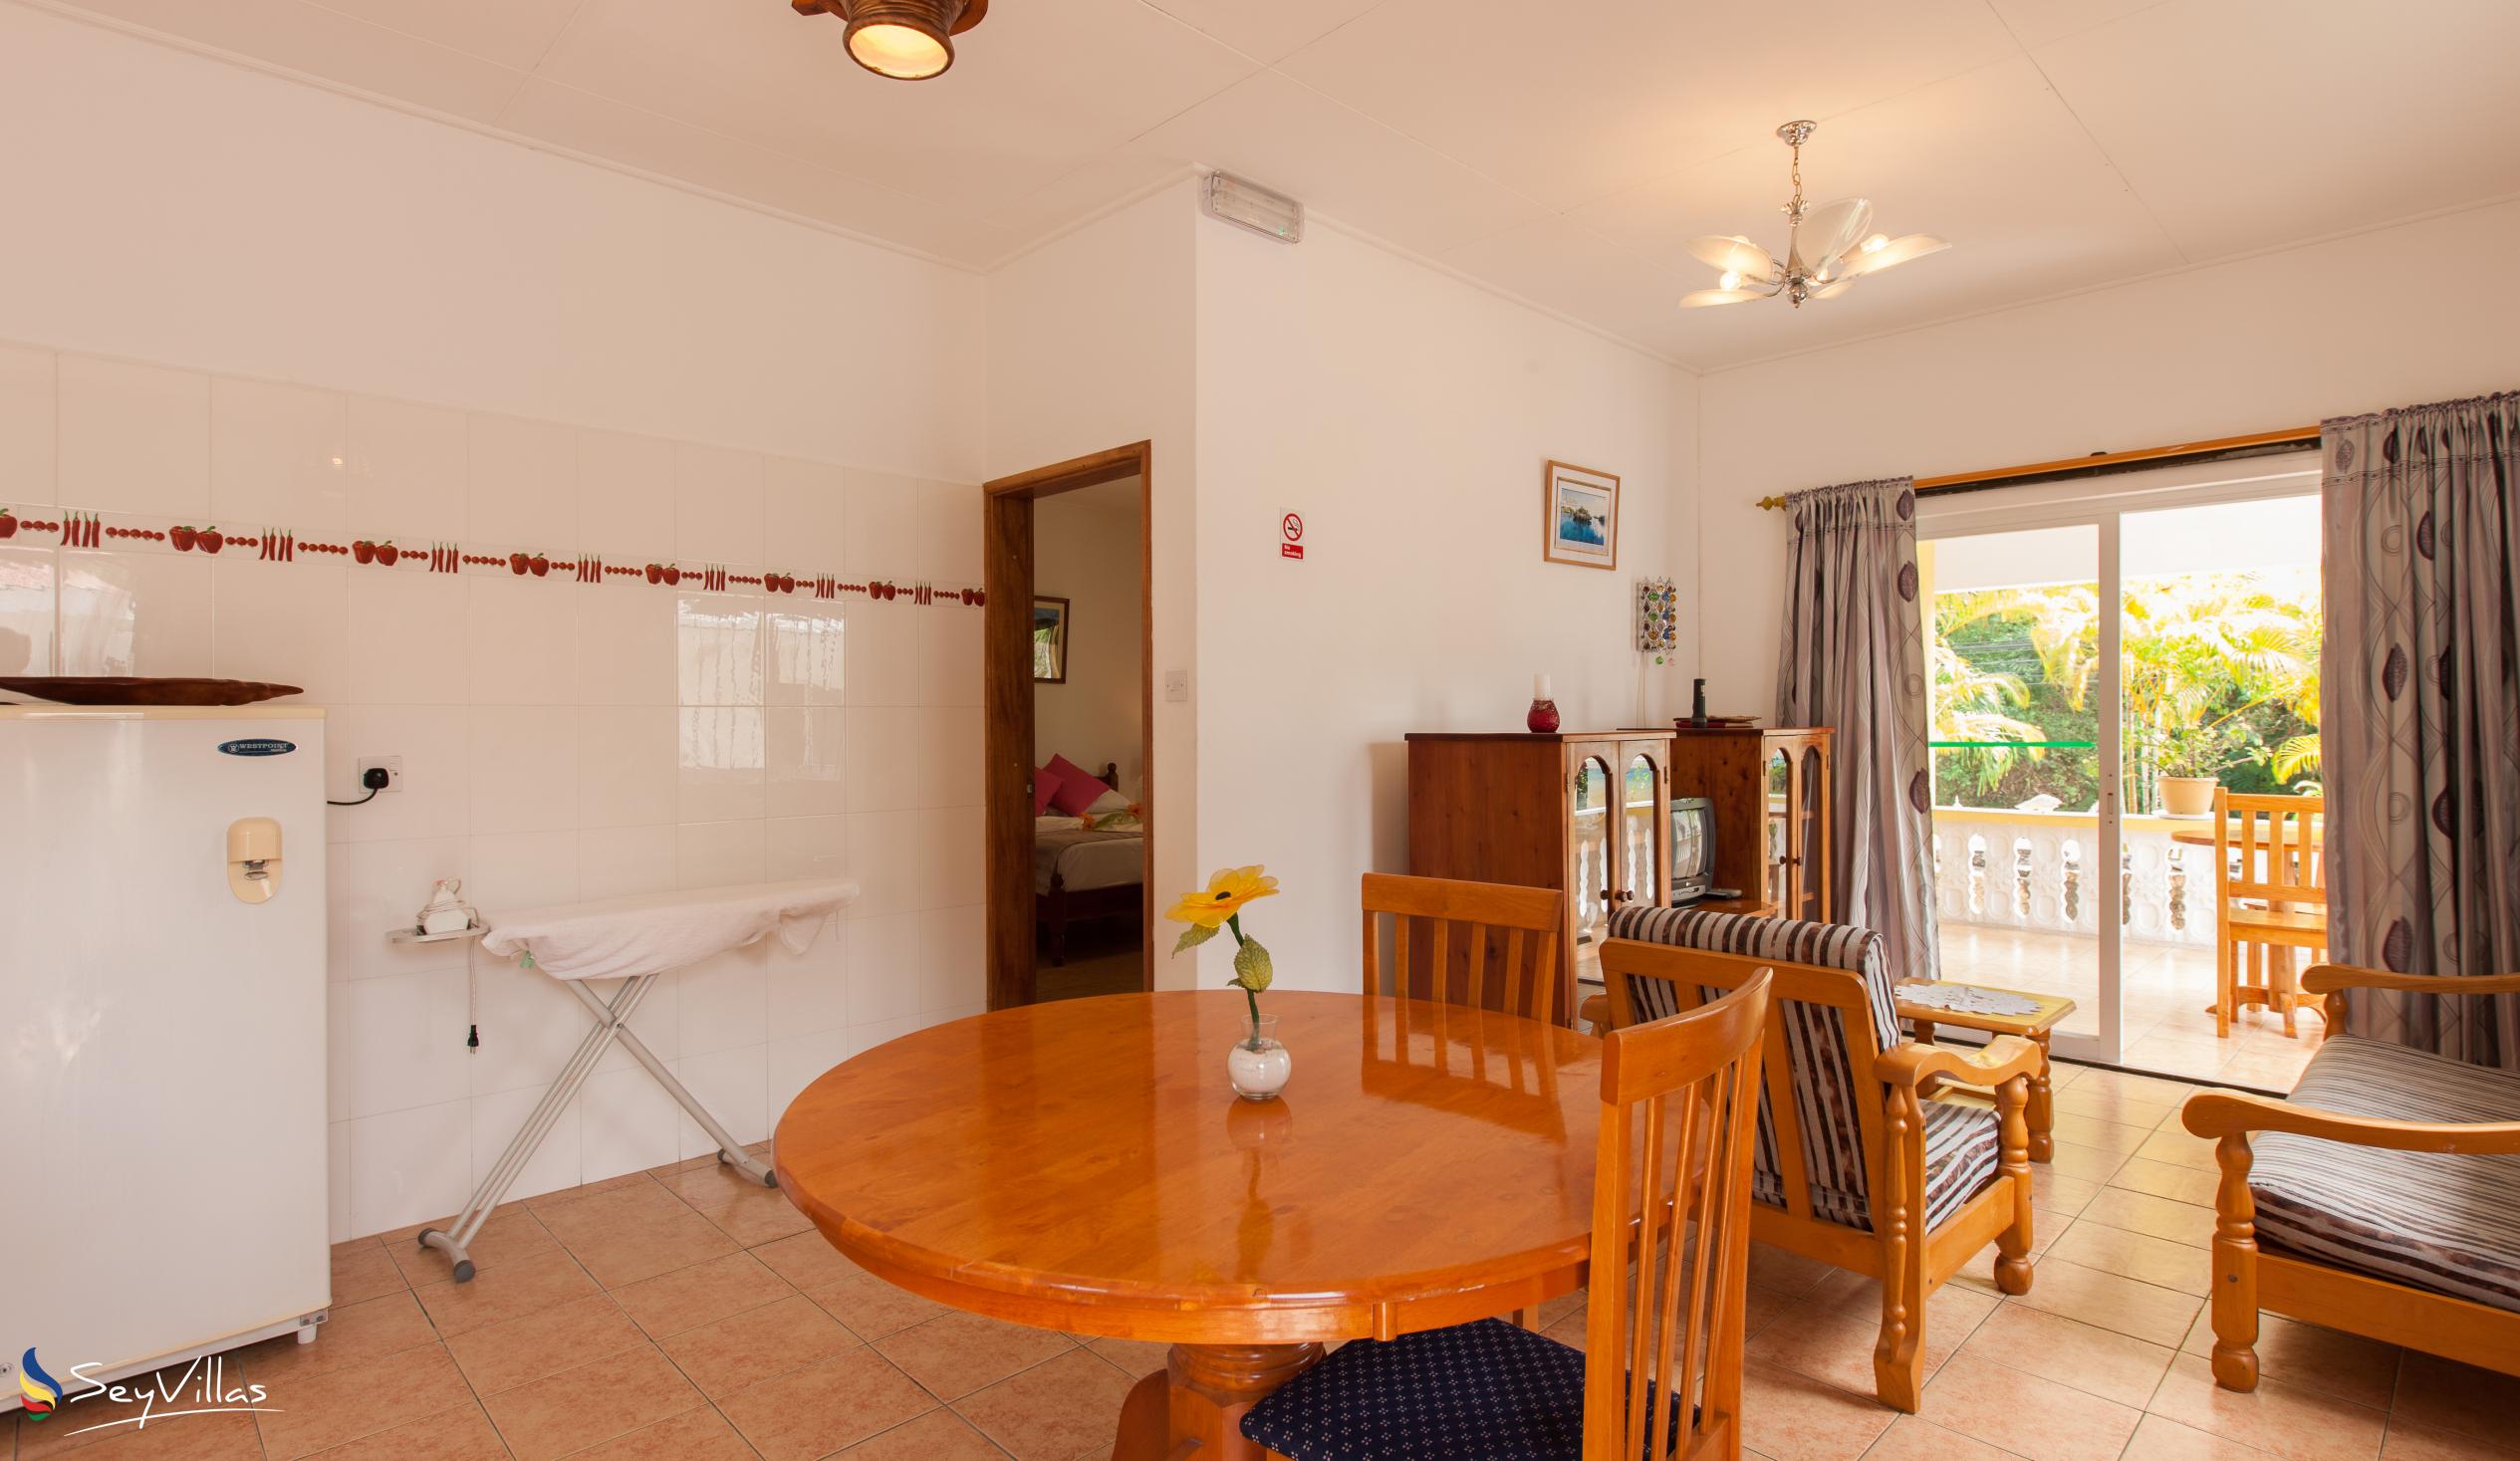 Foto 53: Acquario Villa - Appartement avec 1 chambre - Praslin (Seychelles)